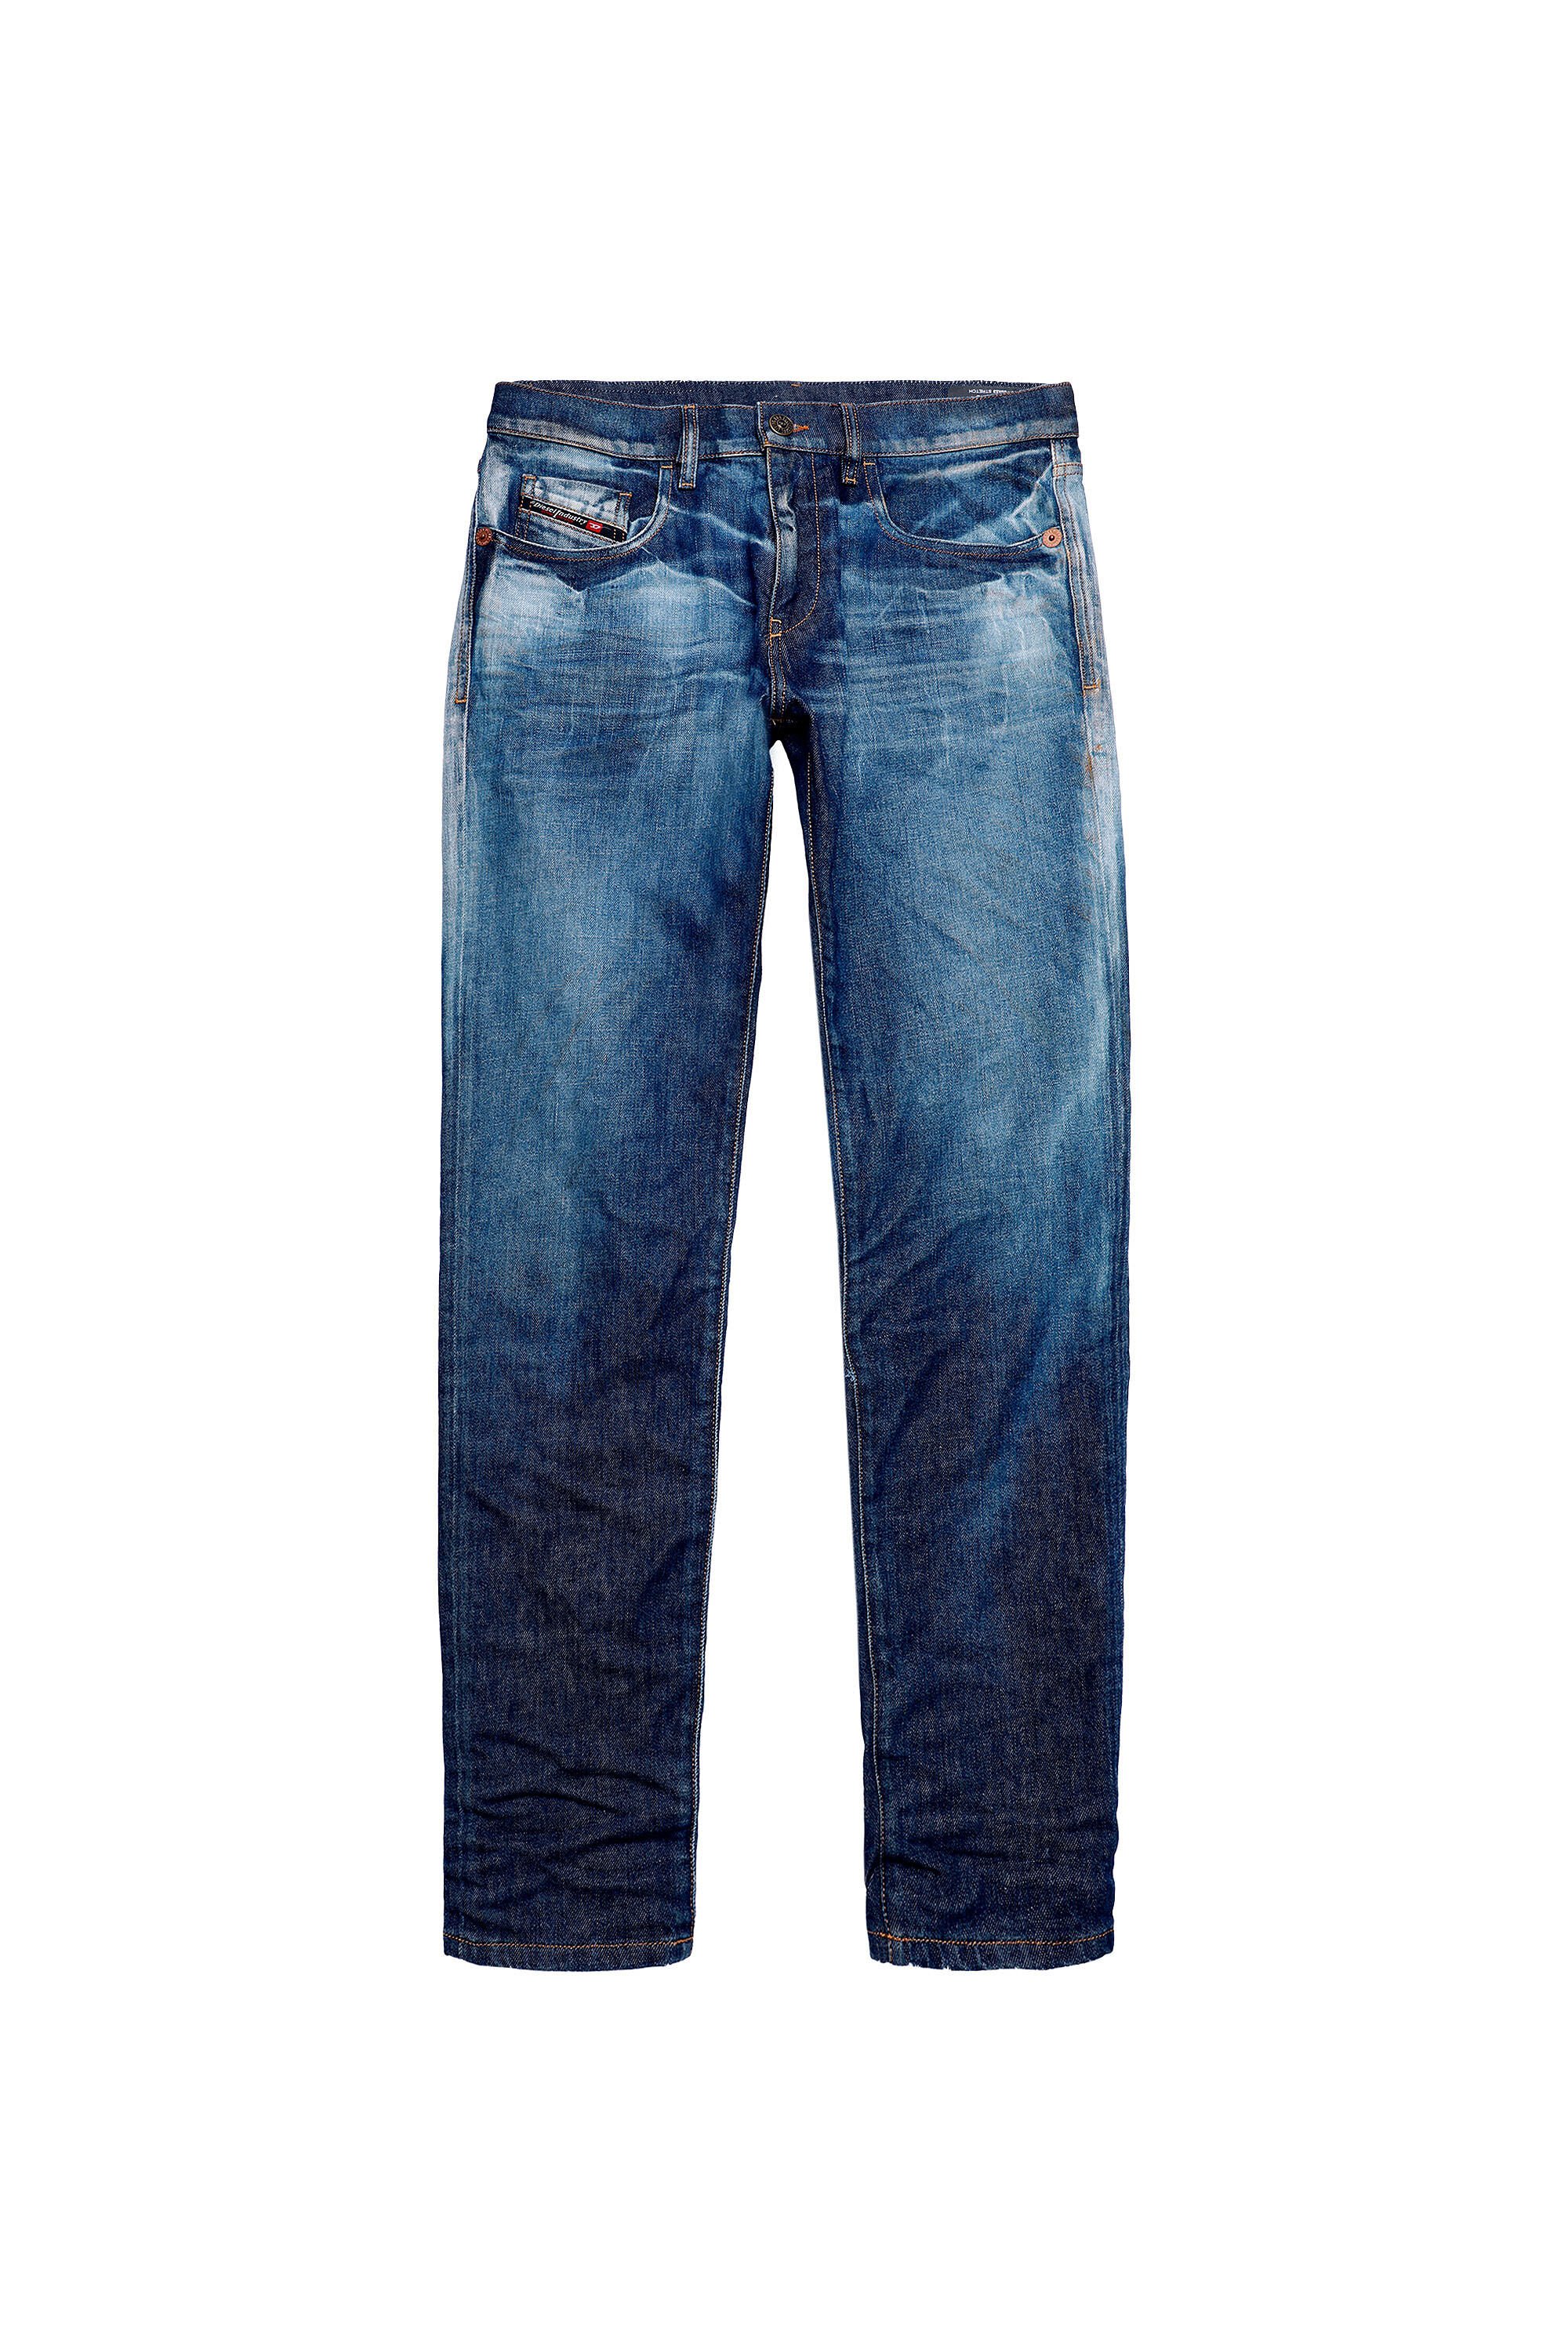 Diesel - 2019 D-STRUKT 09A13 Slim Jeans,  - Image 2